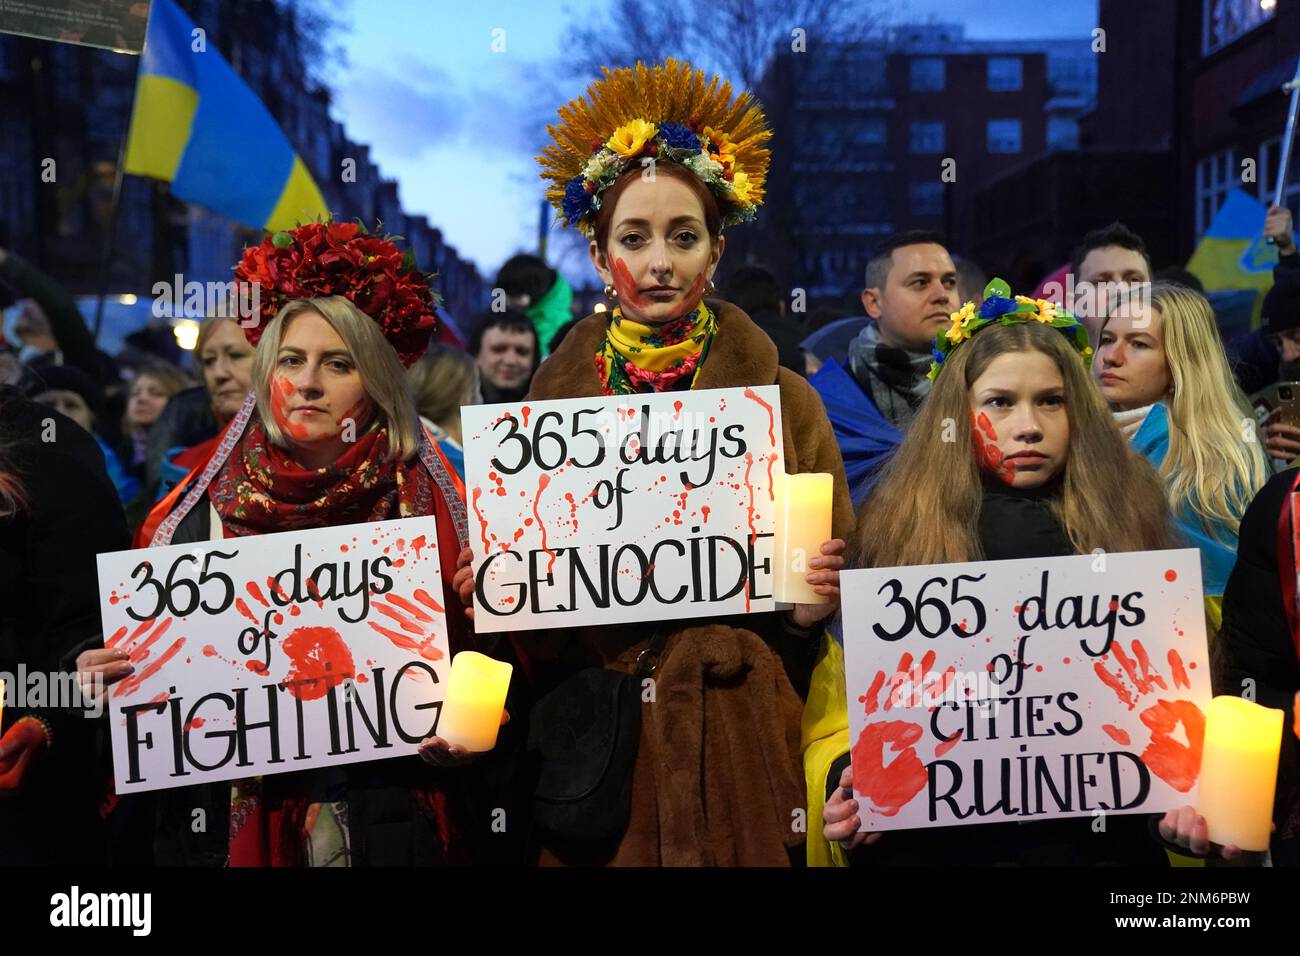 Persone al di fuori dell'ambasciata russa a Bayswater, nel centro di Londra, in una manifestazione per celebrare il primo anniversario dell'invasione russa dell'Ucraina. Data immagine: Venerdì 24 febbraio 2023. Foto Stock